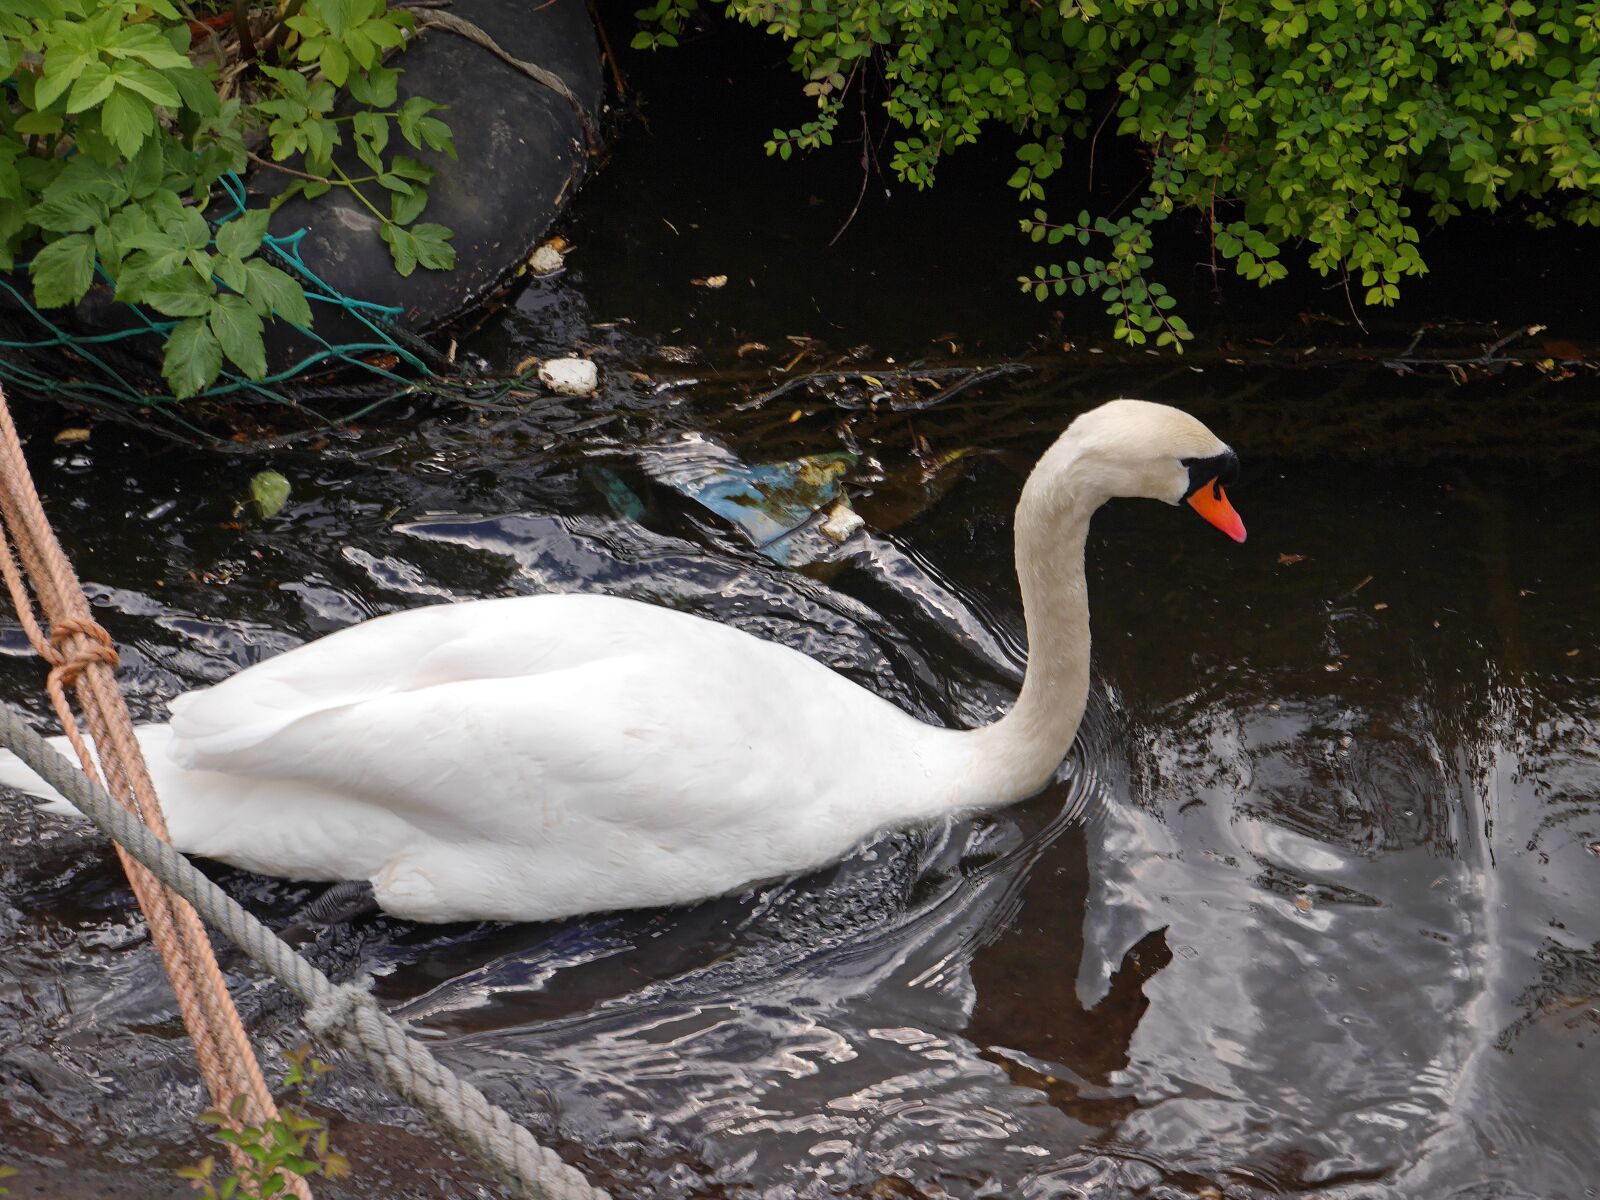 Panasonic Lumix DMC-GF6 sample photo. Swan, white swan, nature photography